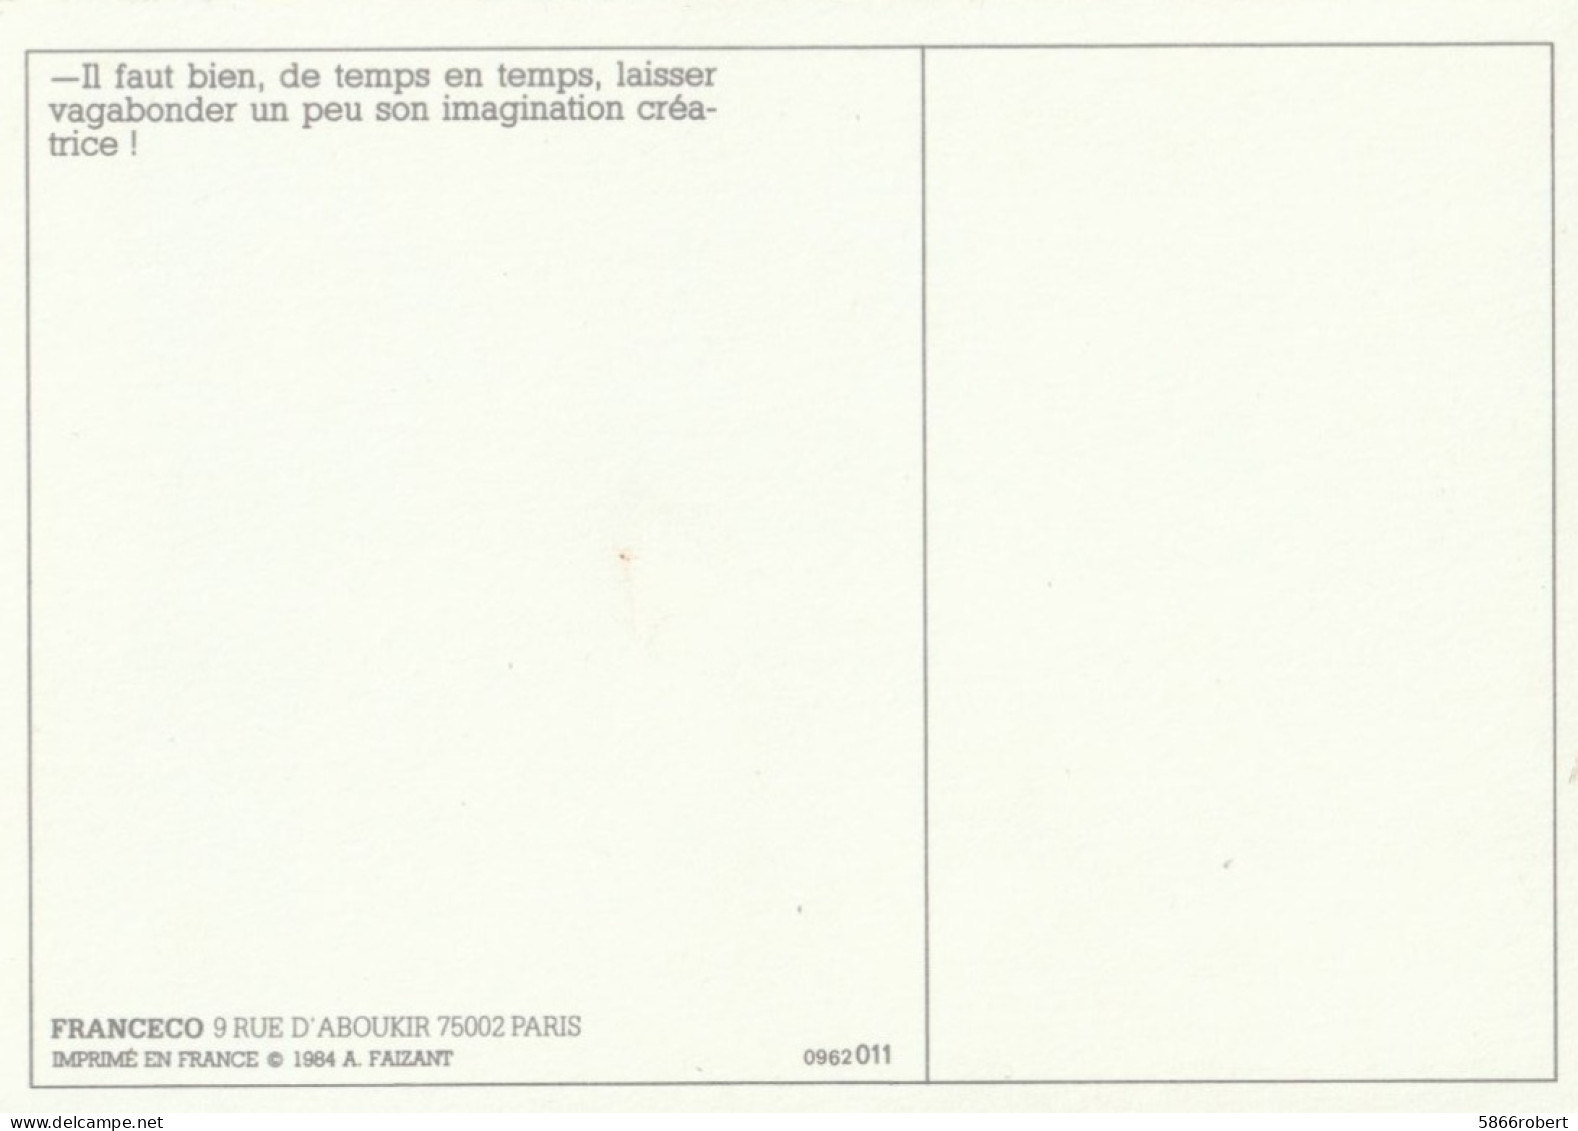 CARTE POSTALE DE 12CM/17CM SIGNEE JACQUES FAIZANT 1984 : VAGABONDER UN PEU SON IMAGINATION CREATRICE ! - Faizant